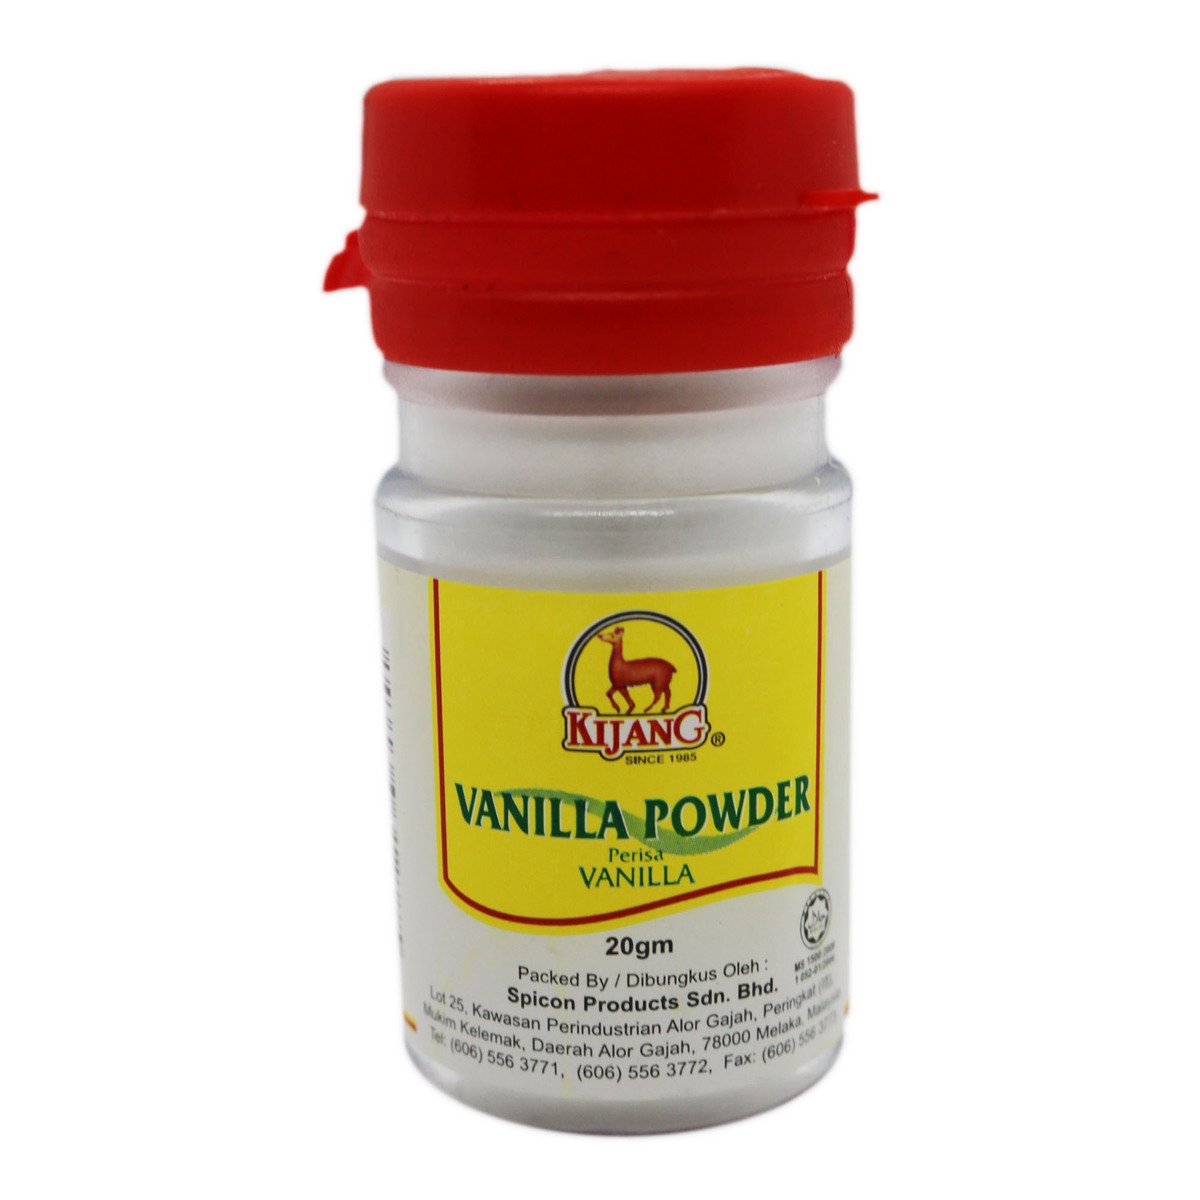 Kijang Vanilla Powder 20g